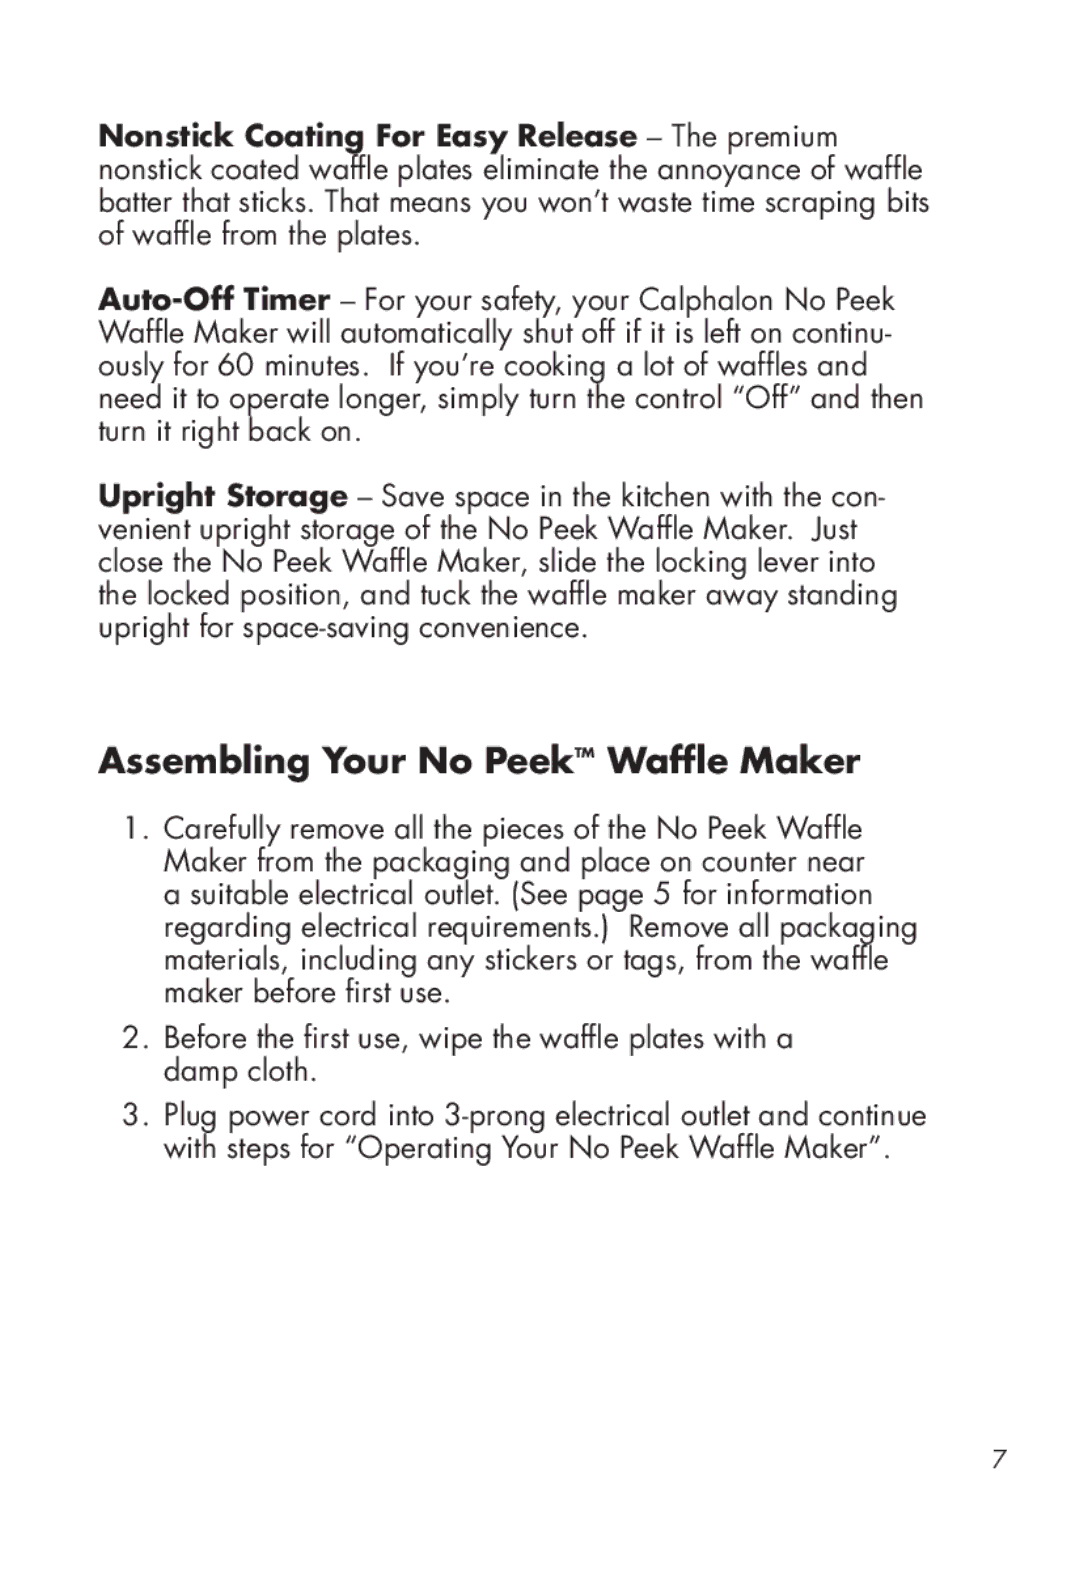 Calphalon HE400WM manual Assembling Your No PeekTM Waffle Maker 